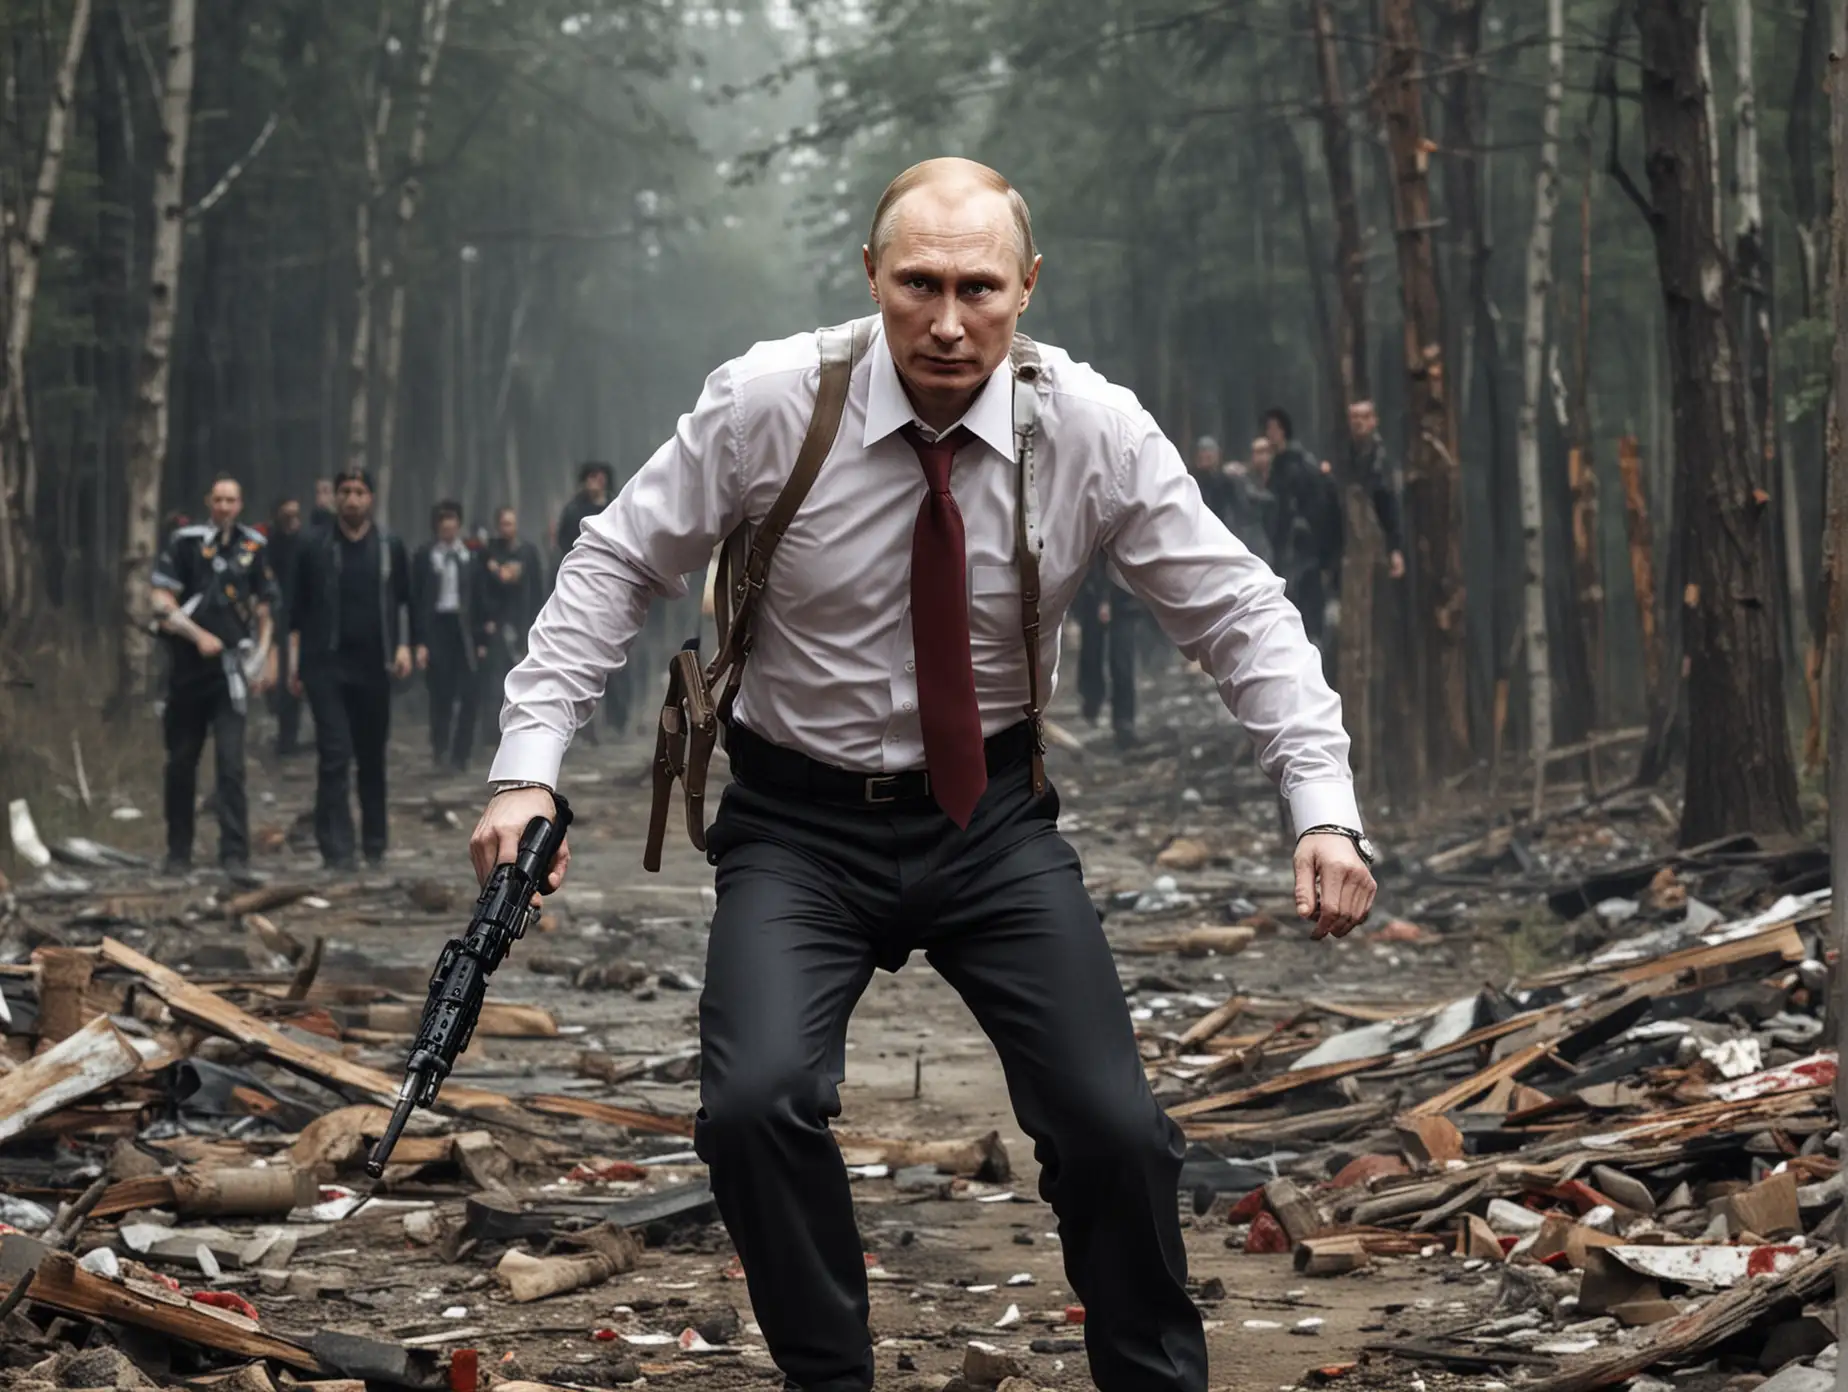 Putin-as-Hero-in-Zombie-Apocalypse